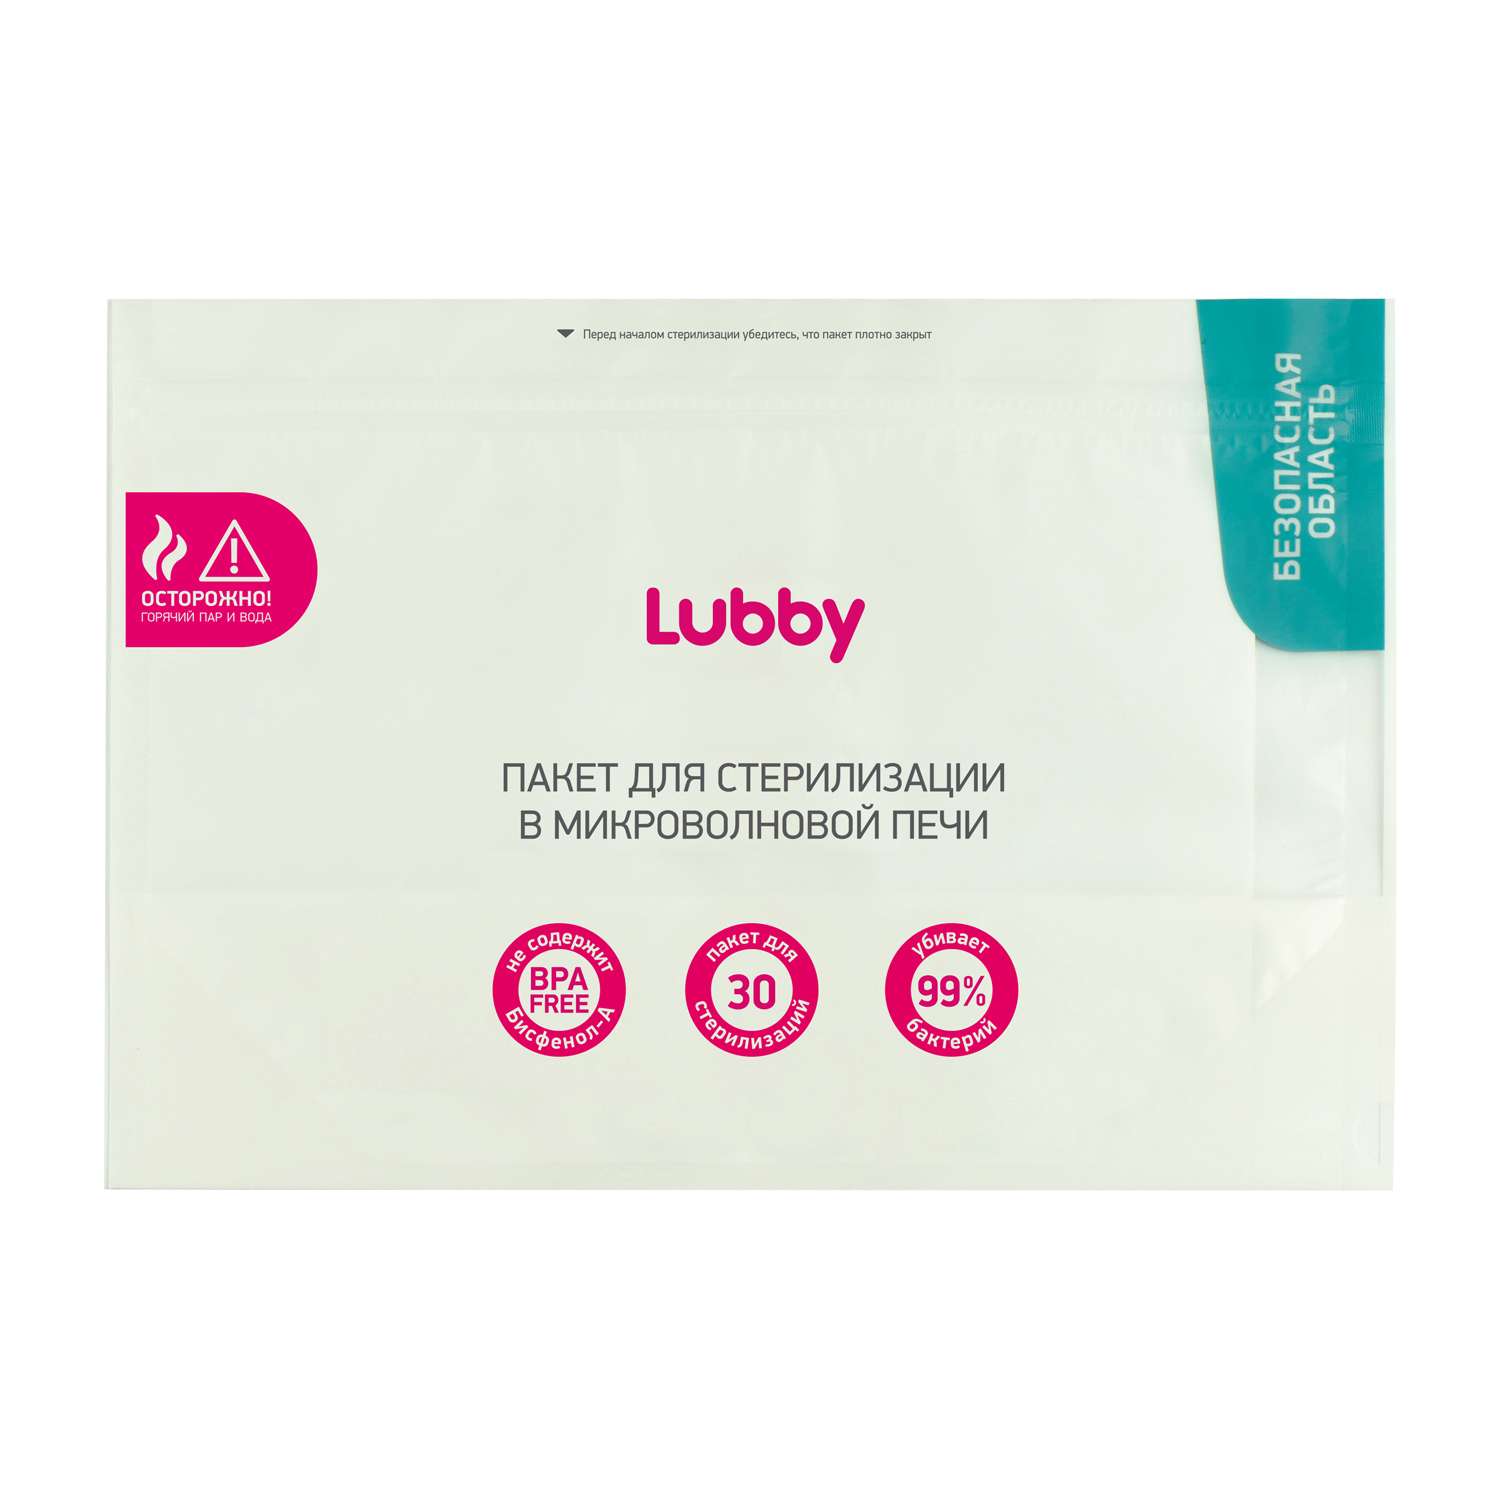 Пакеты для стерилизации в микроволновой печи Lubby 3шт 20273 - фото 3